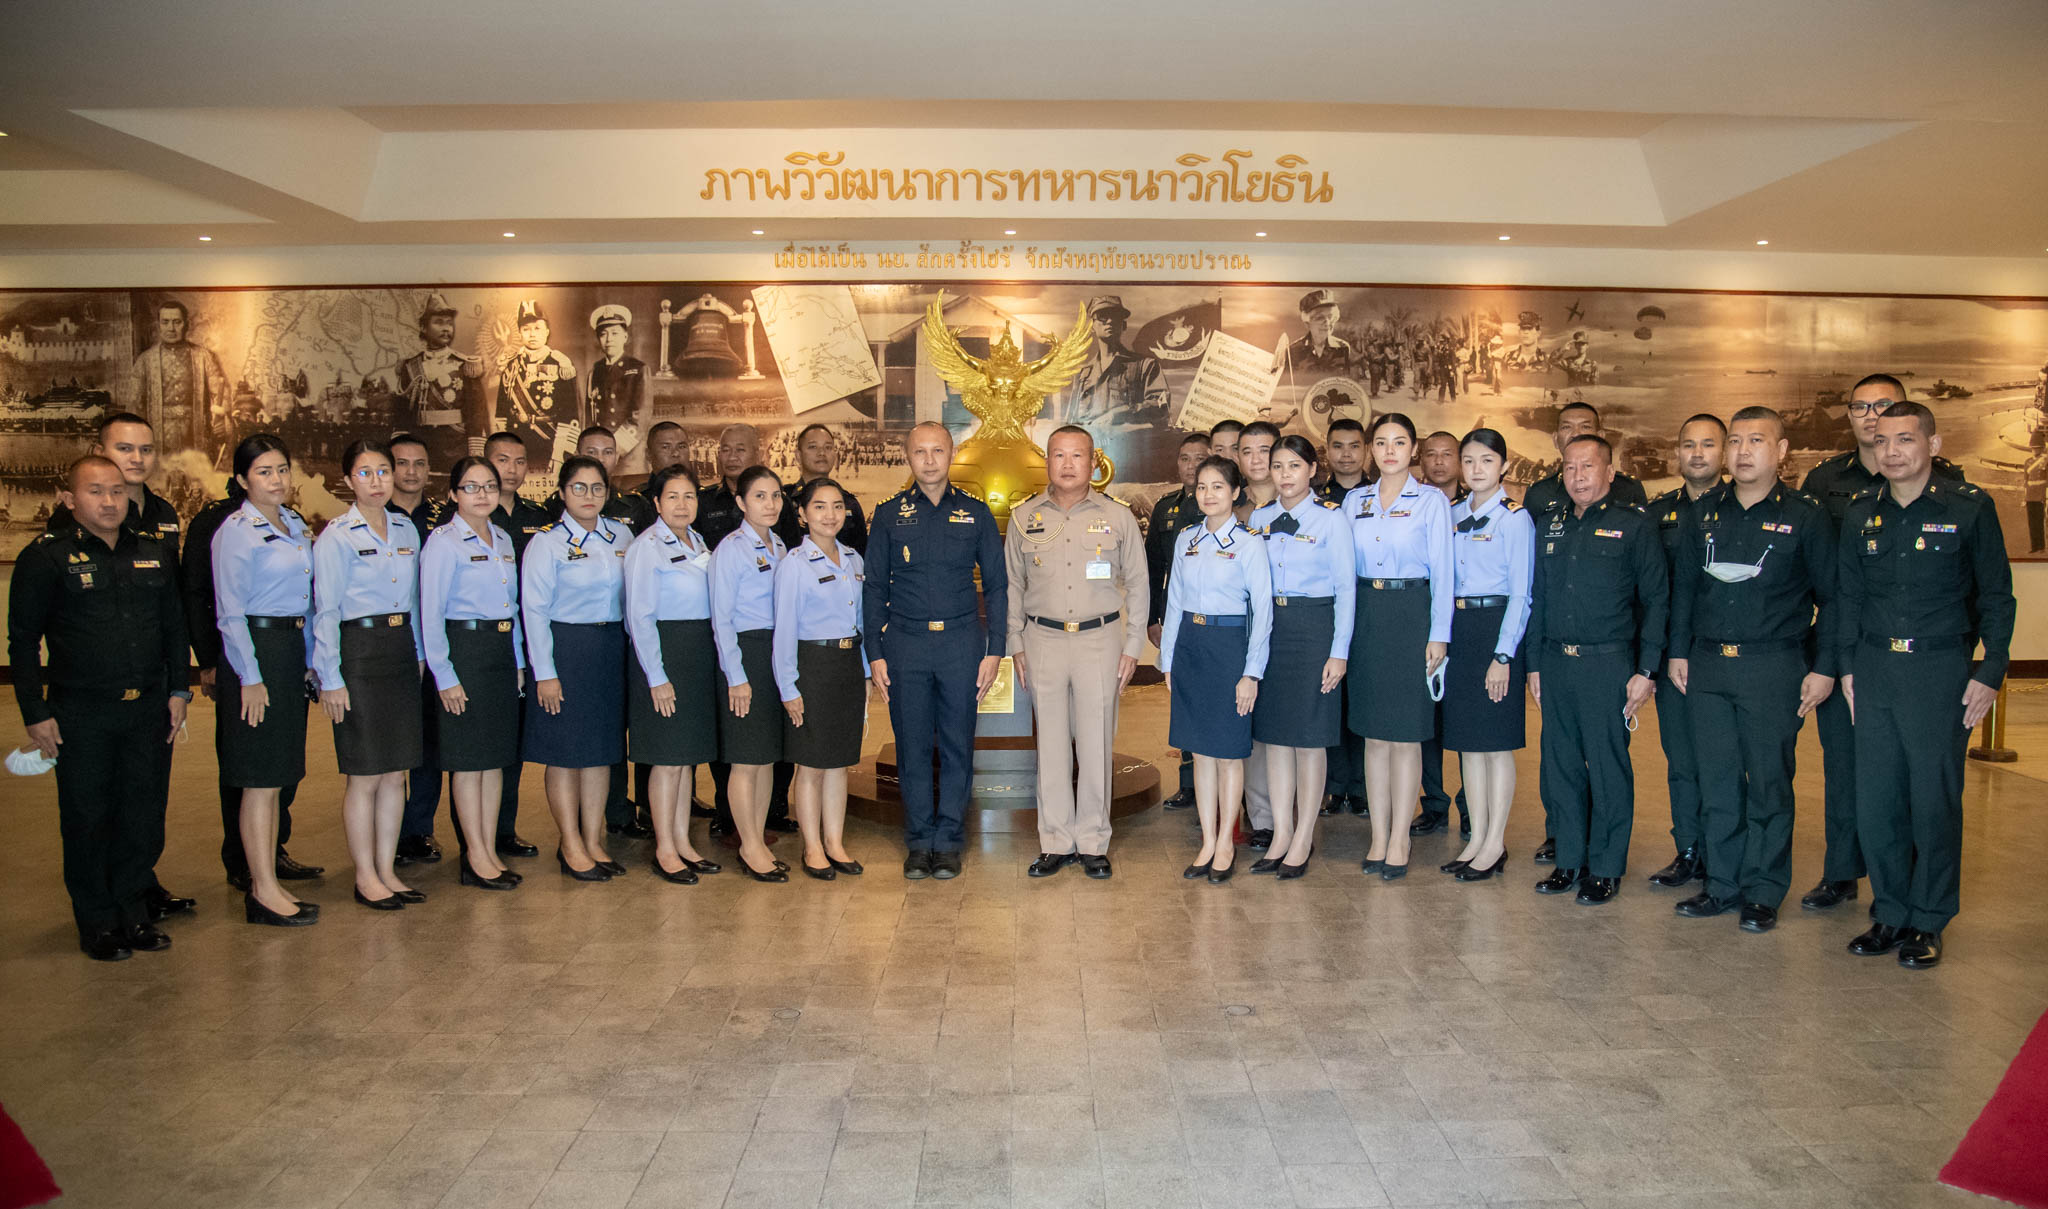 รองเสนาธิการหน่วยบัญชาการนาวิกโยธินให้การต้อนรับผู้อำนวยการกองการฝึกและศึกษา โรงเรียนรักษาความปลอดภัย ศูนย์รักษาความปลอดภัย กองบัญชาการกองทัพไทยและคณะอาจารย์ ข้าราชการ